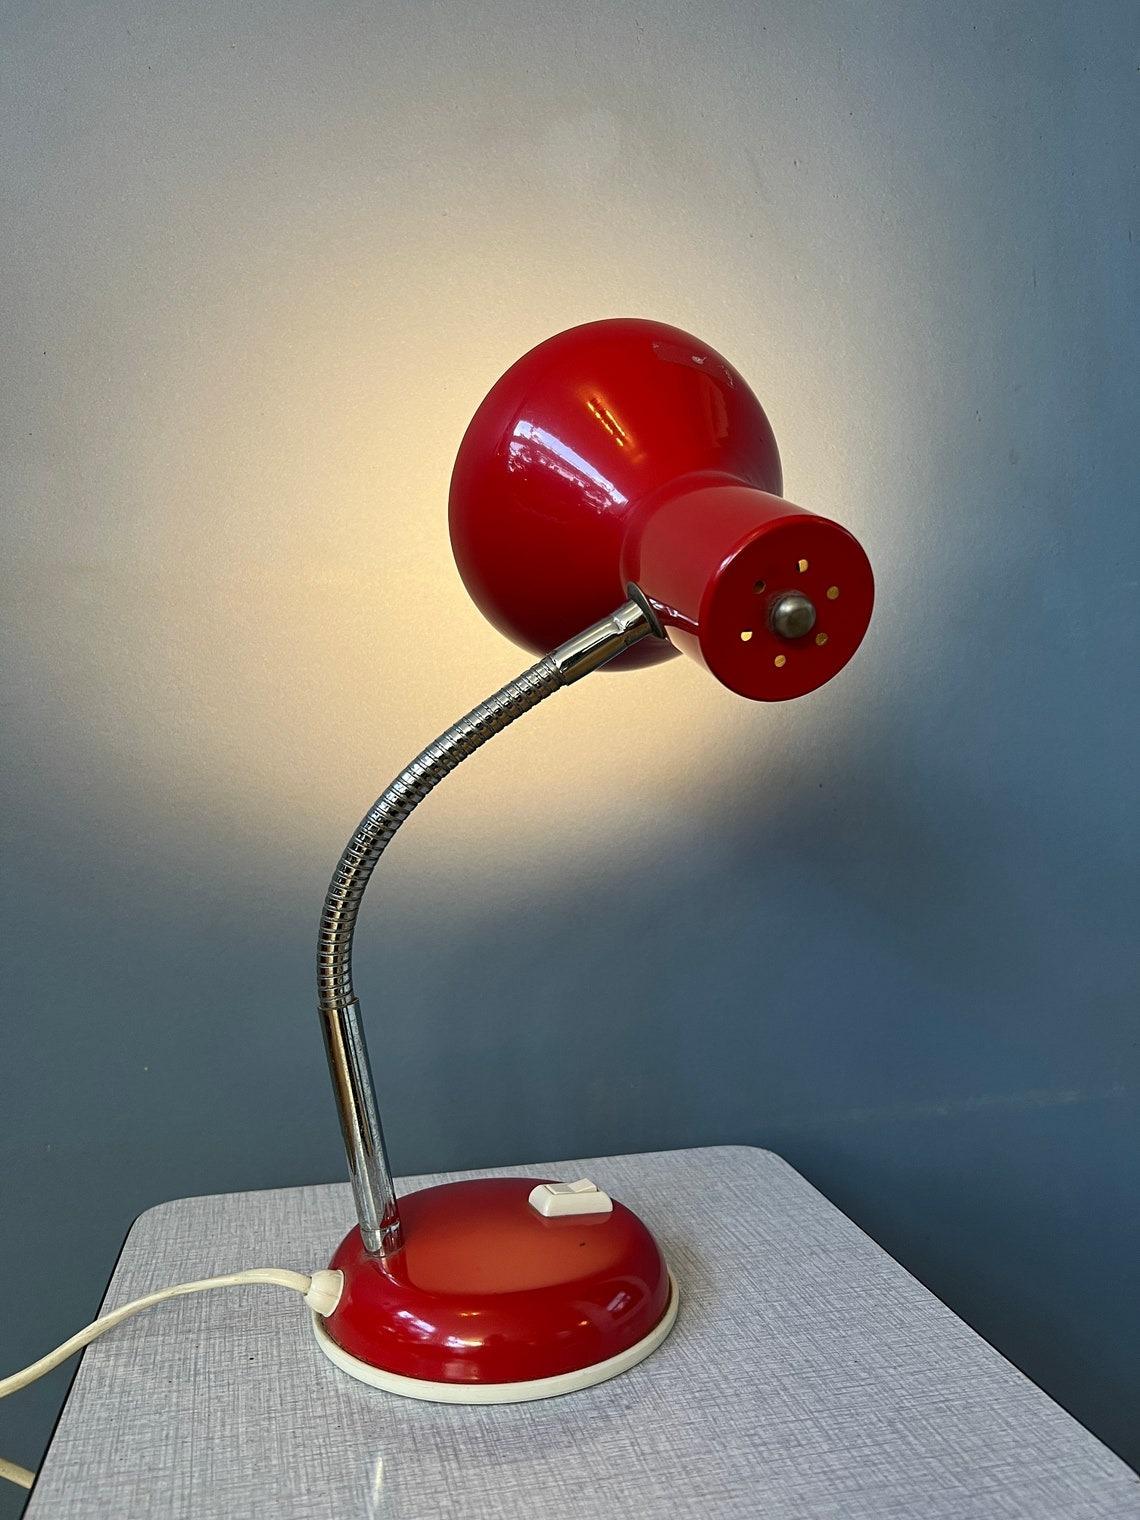 Petite lampe de table vintage space age de couleur rouge avec bras flexible. Le bras et l'abat-jour peuvent être positionnés de la manière souhaitée. La lampe est en métal. La lampe nécessite une ampoule E27/26 (standard) et dispose actuellement